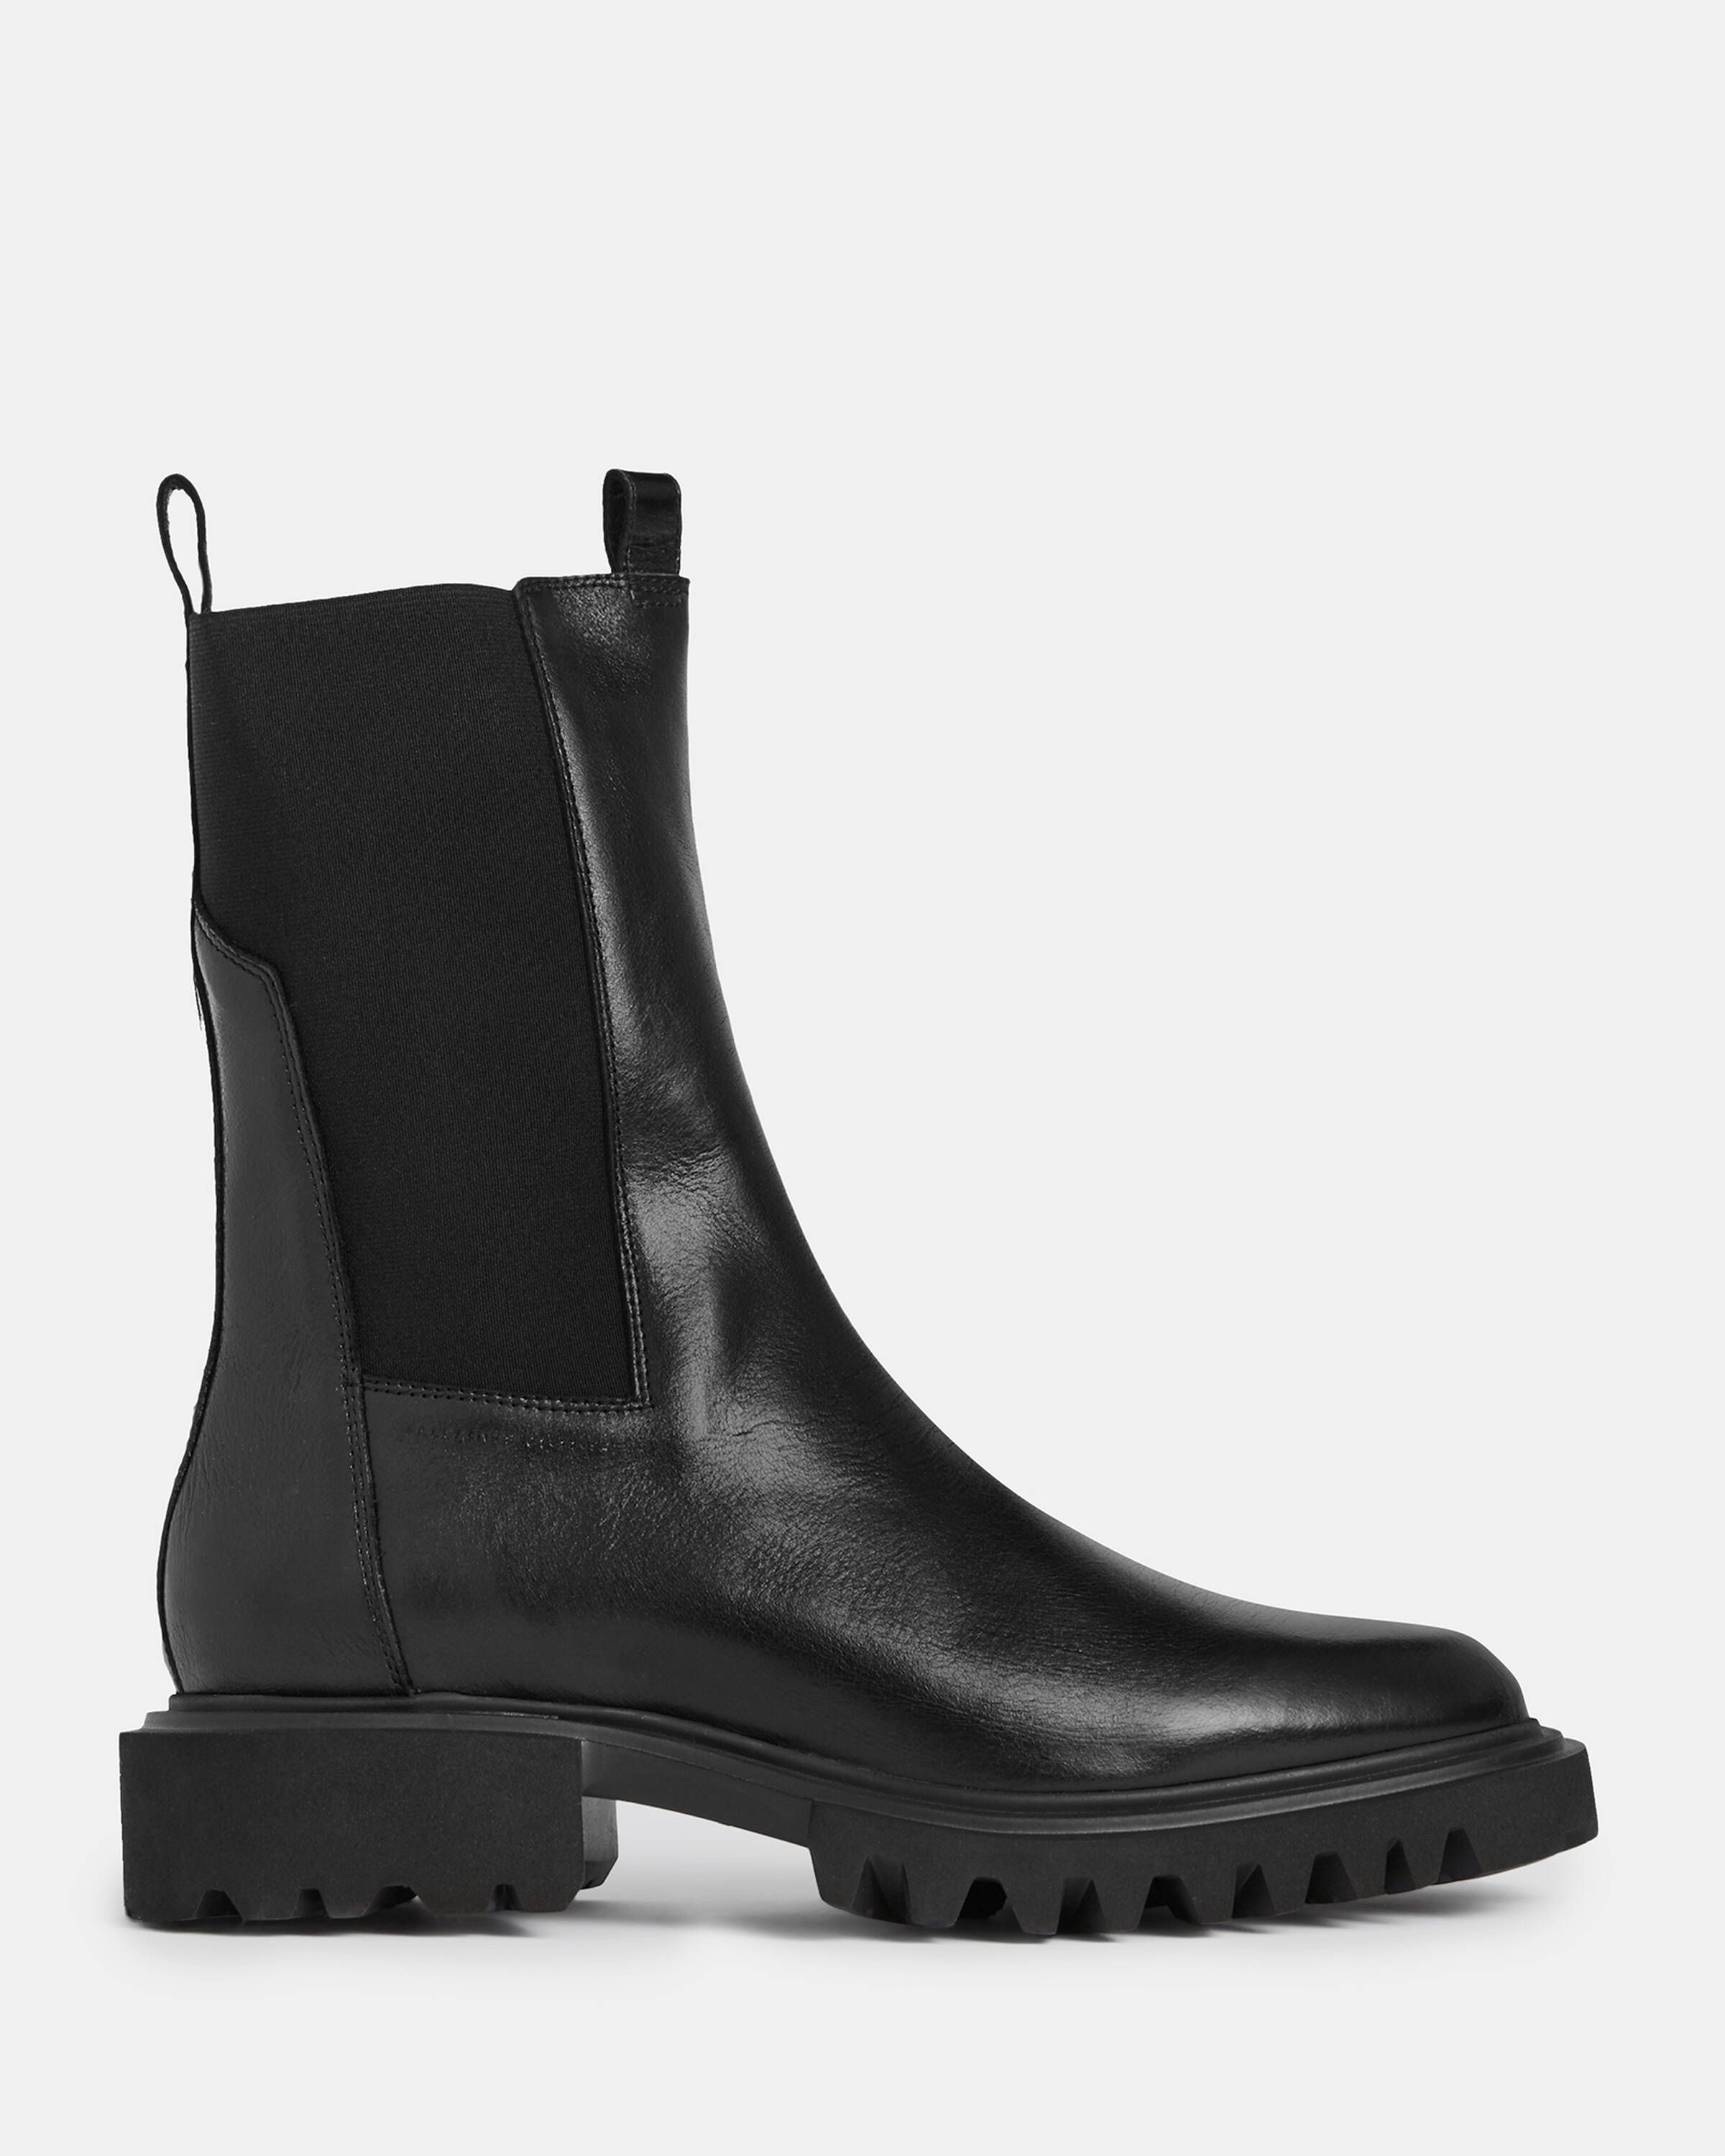 Hallie Leather Boots Black | ALLSAINTS US | AllSaints US